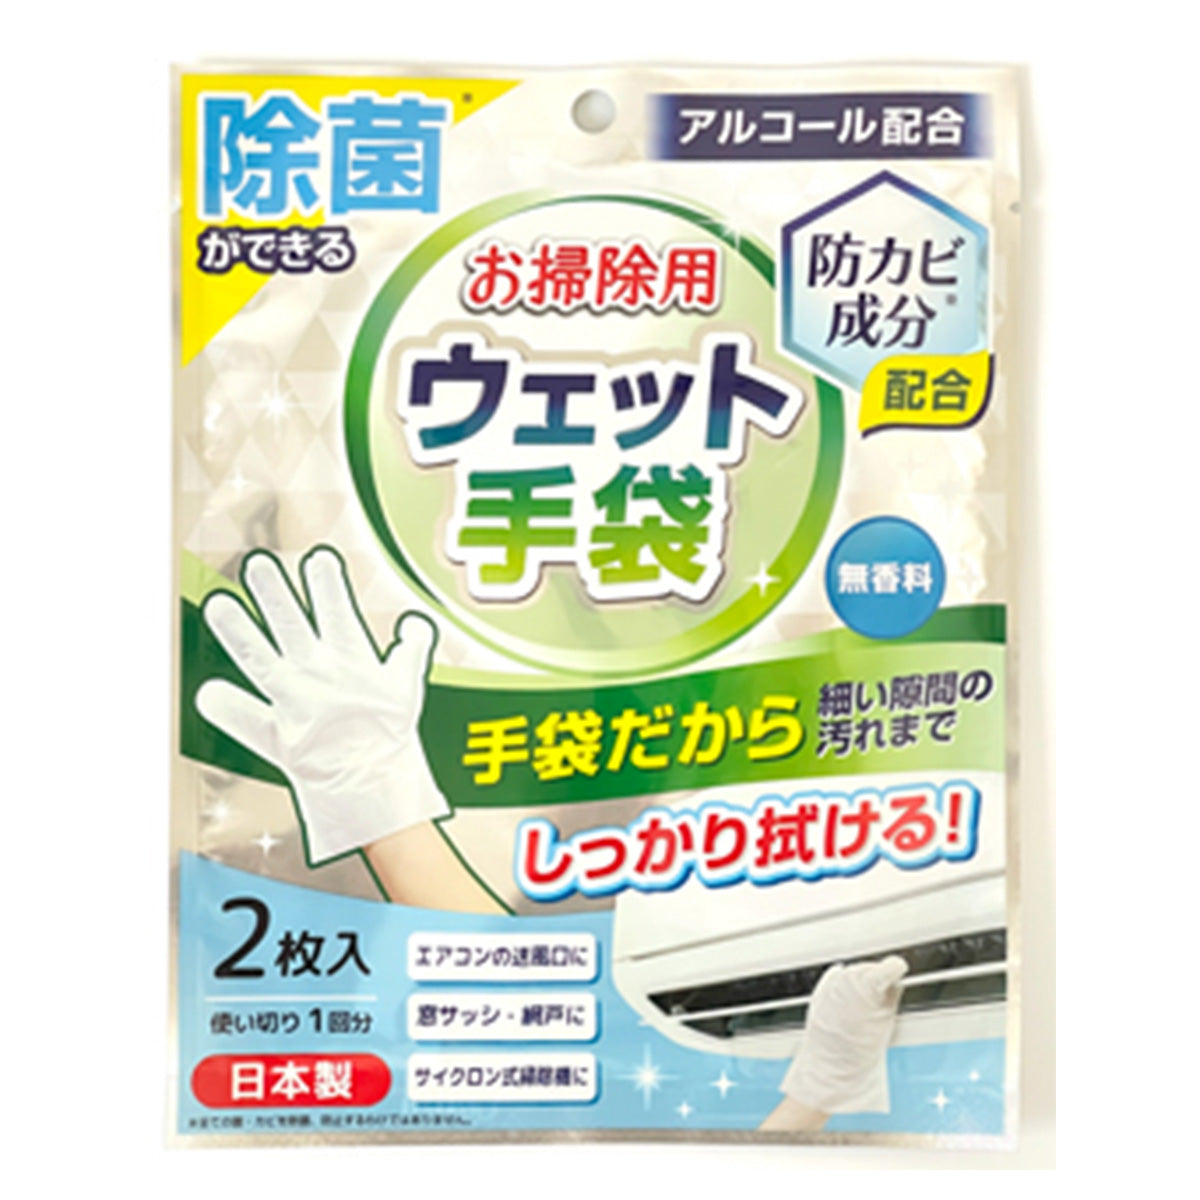 除菌ができるお掃除用ウェット手袋 1523/344074